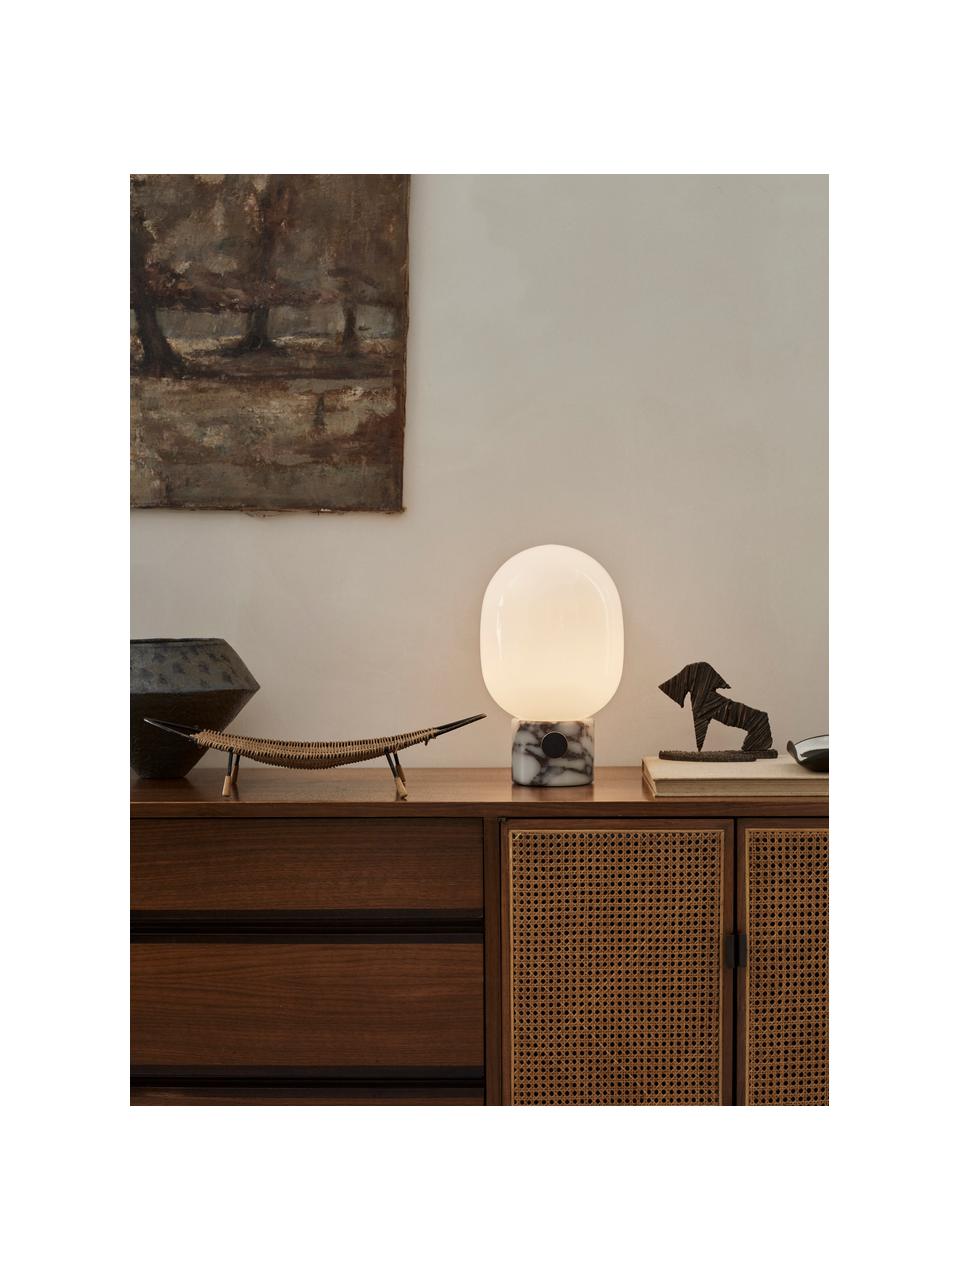 Lampada da tavolo luce regolabile con porta USB  JWDA, Paralume: vetro, Grigio, marmorizzato, Ø 19 x Alt. 32 cm